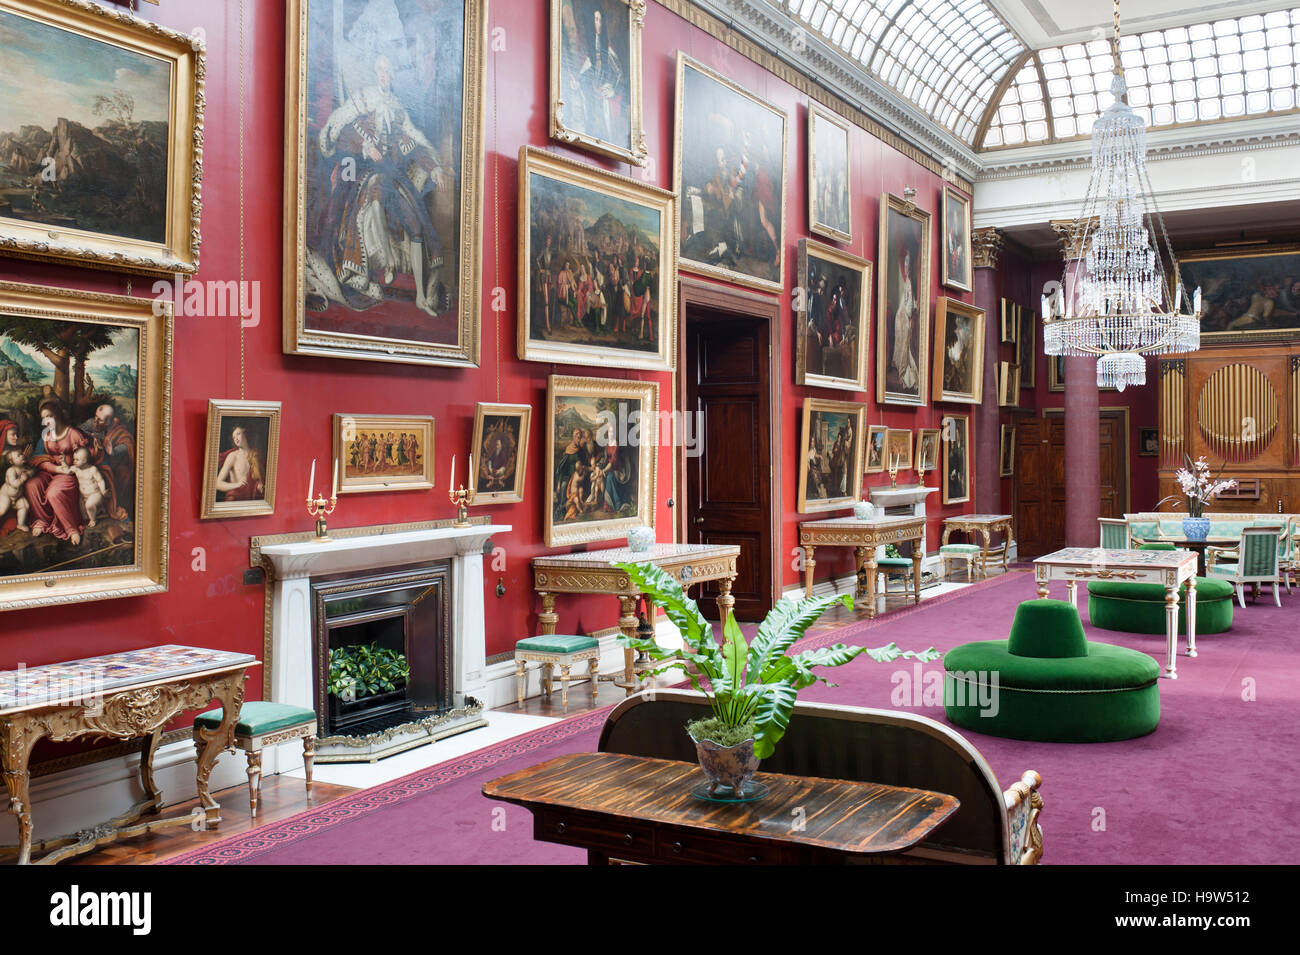 Die Bildergalerie im Attingham Park, Shropshire. Die Bildergalerie wurde 1805 von John Nash entworfen. Stockfoto